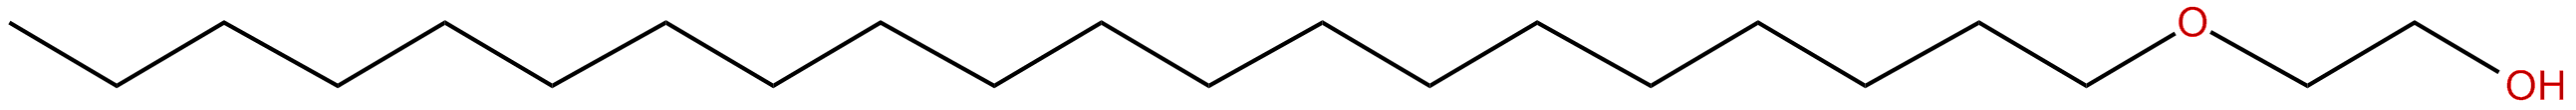 Image of 2-eicosyloxyethanol